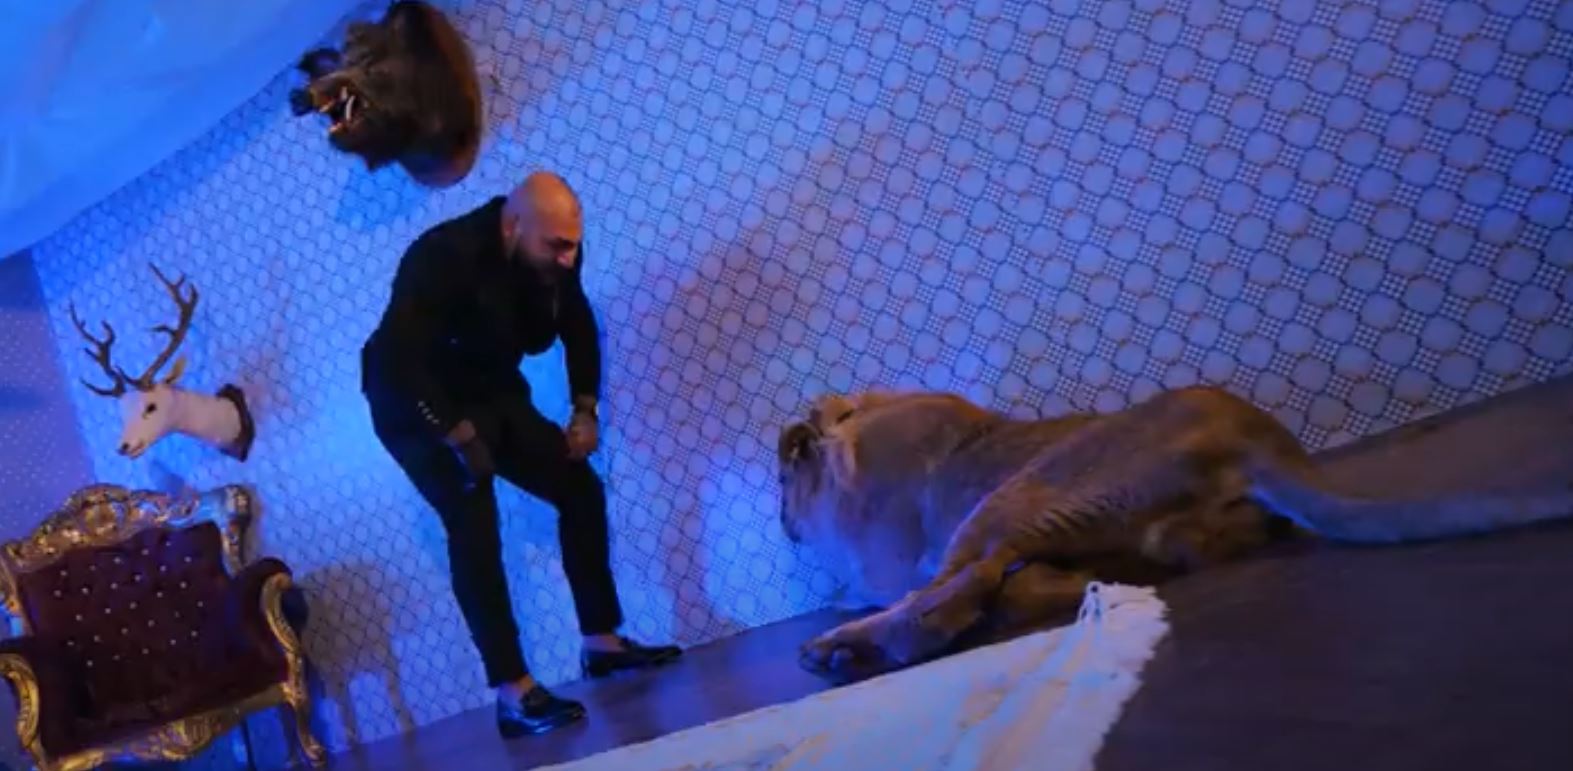 Percheziţii la locuința lui Dani Mocanu, după videoclipul în care apare un leu rănit